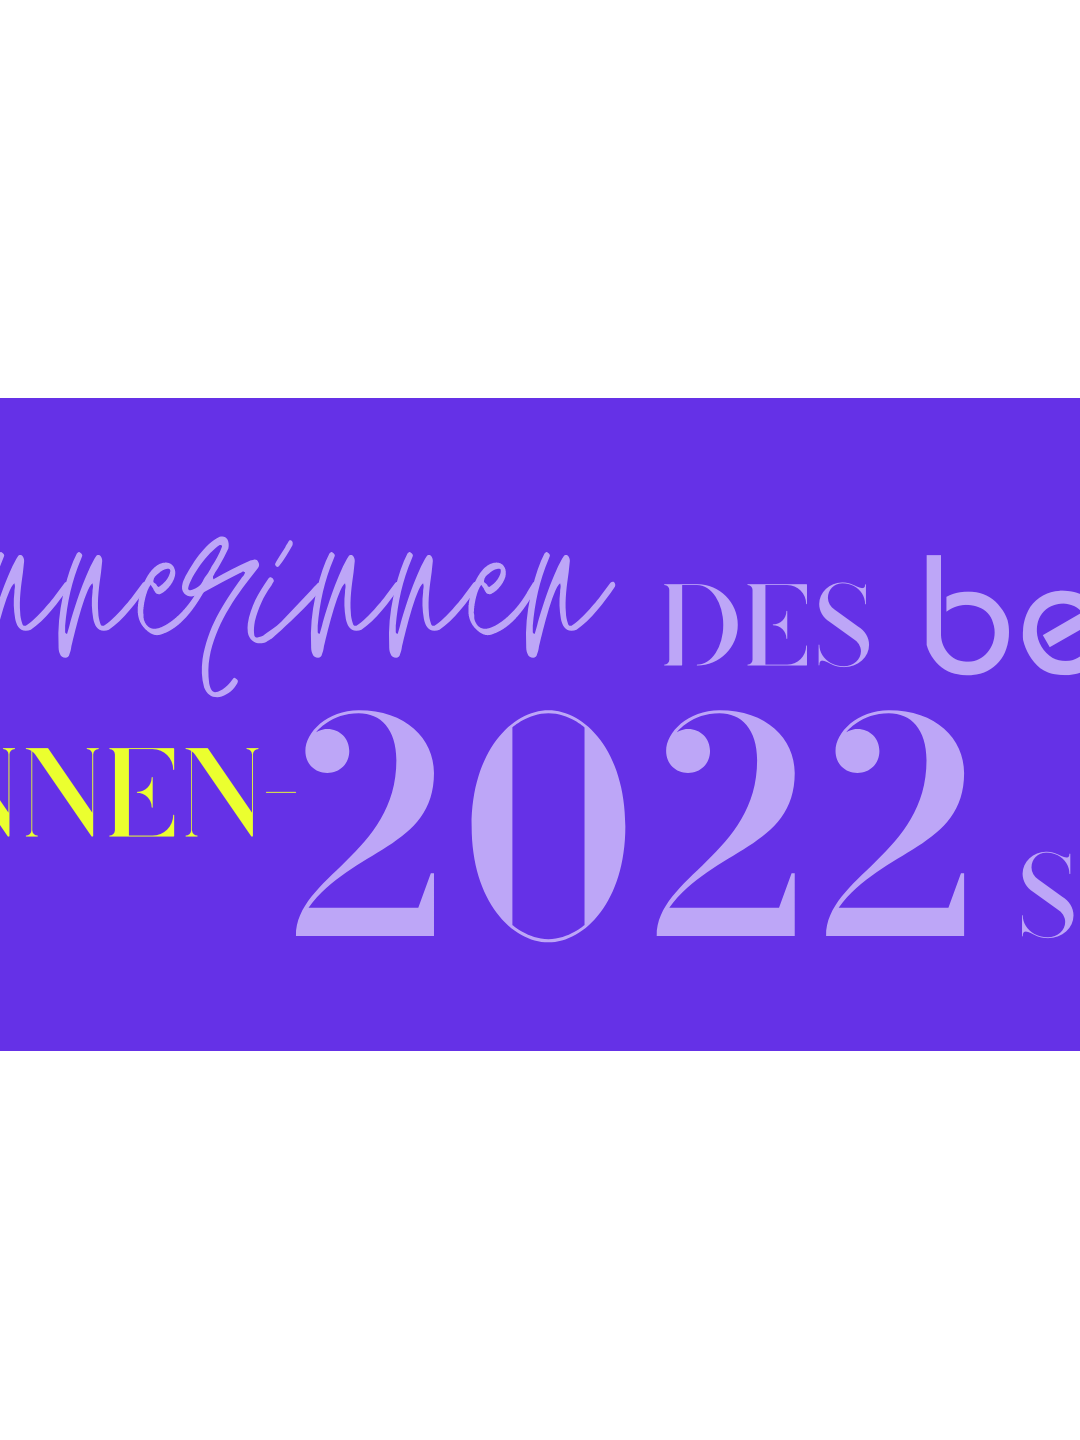 Banner mit Aufschrift: "Die Gewinnerinnen des belladonna Gründerinnenpreis 2022 stehen fest!"